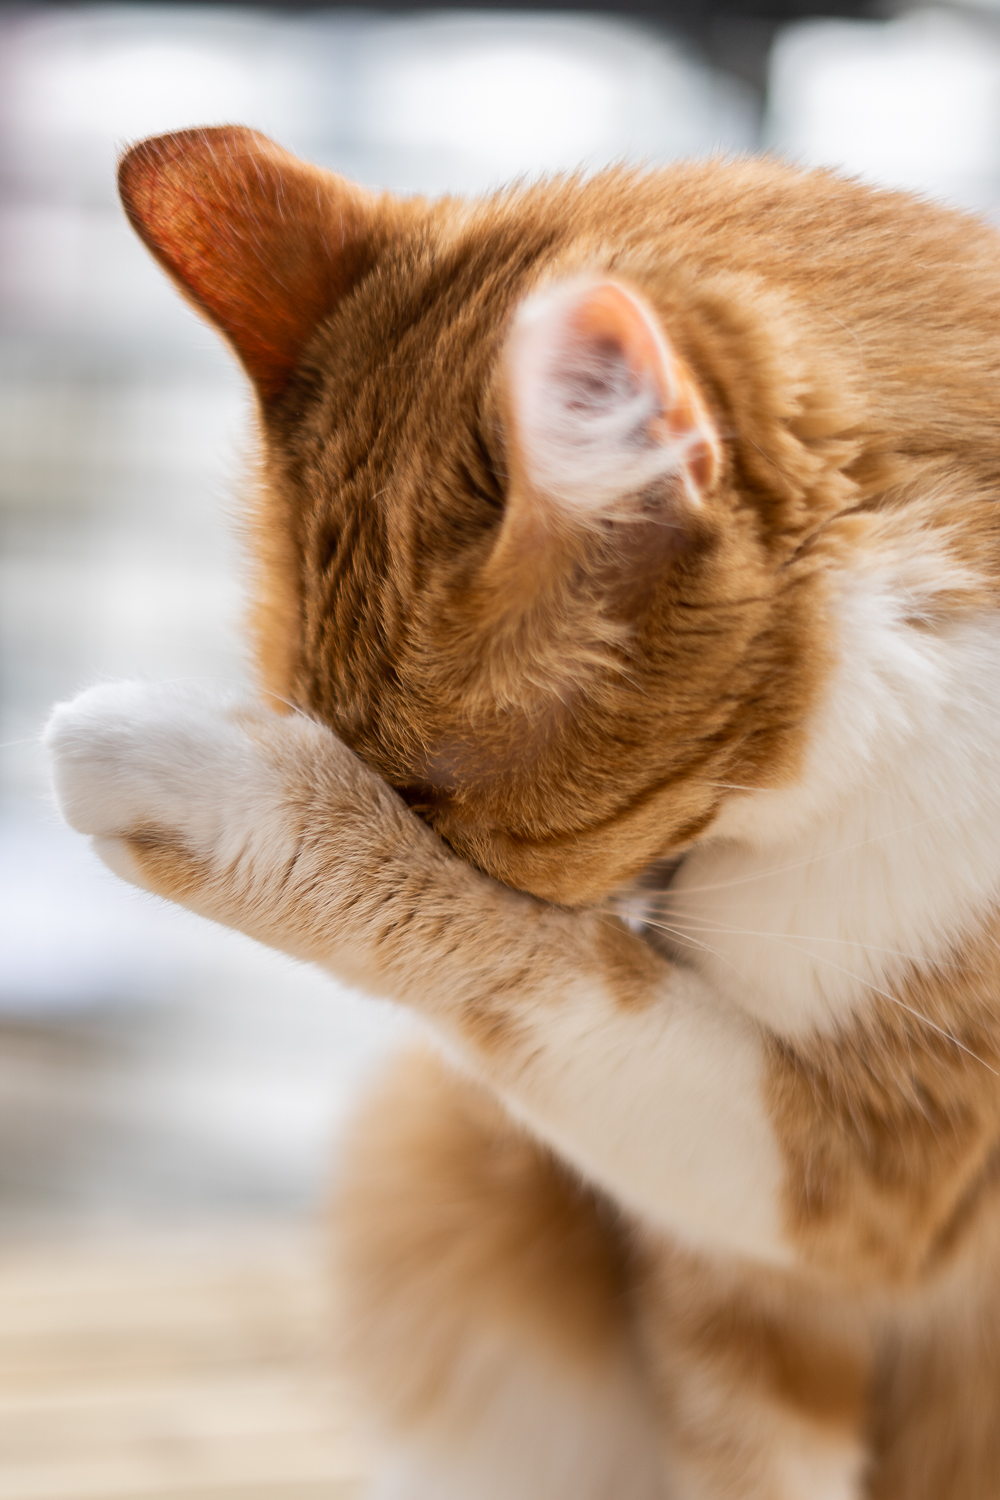 Tipps für Katzen Fotografie-Katzenfutter von Wildes Land-Katzenblog-andysparkles